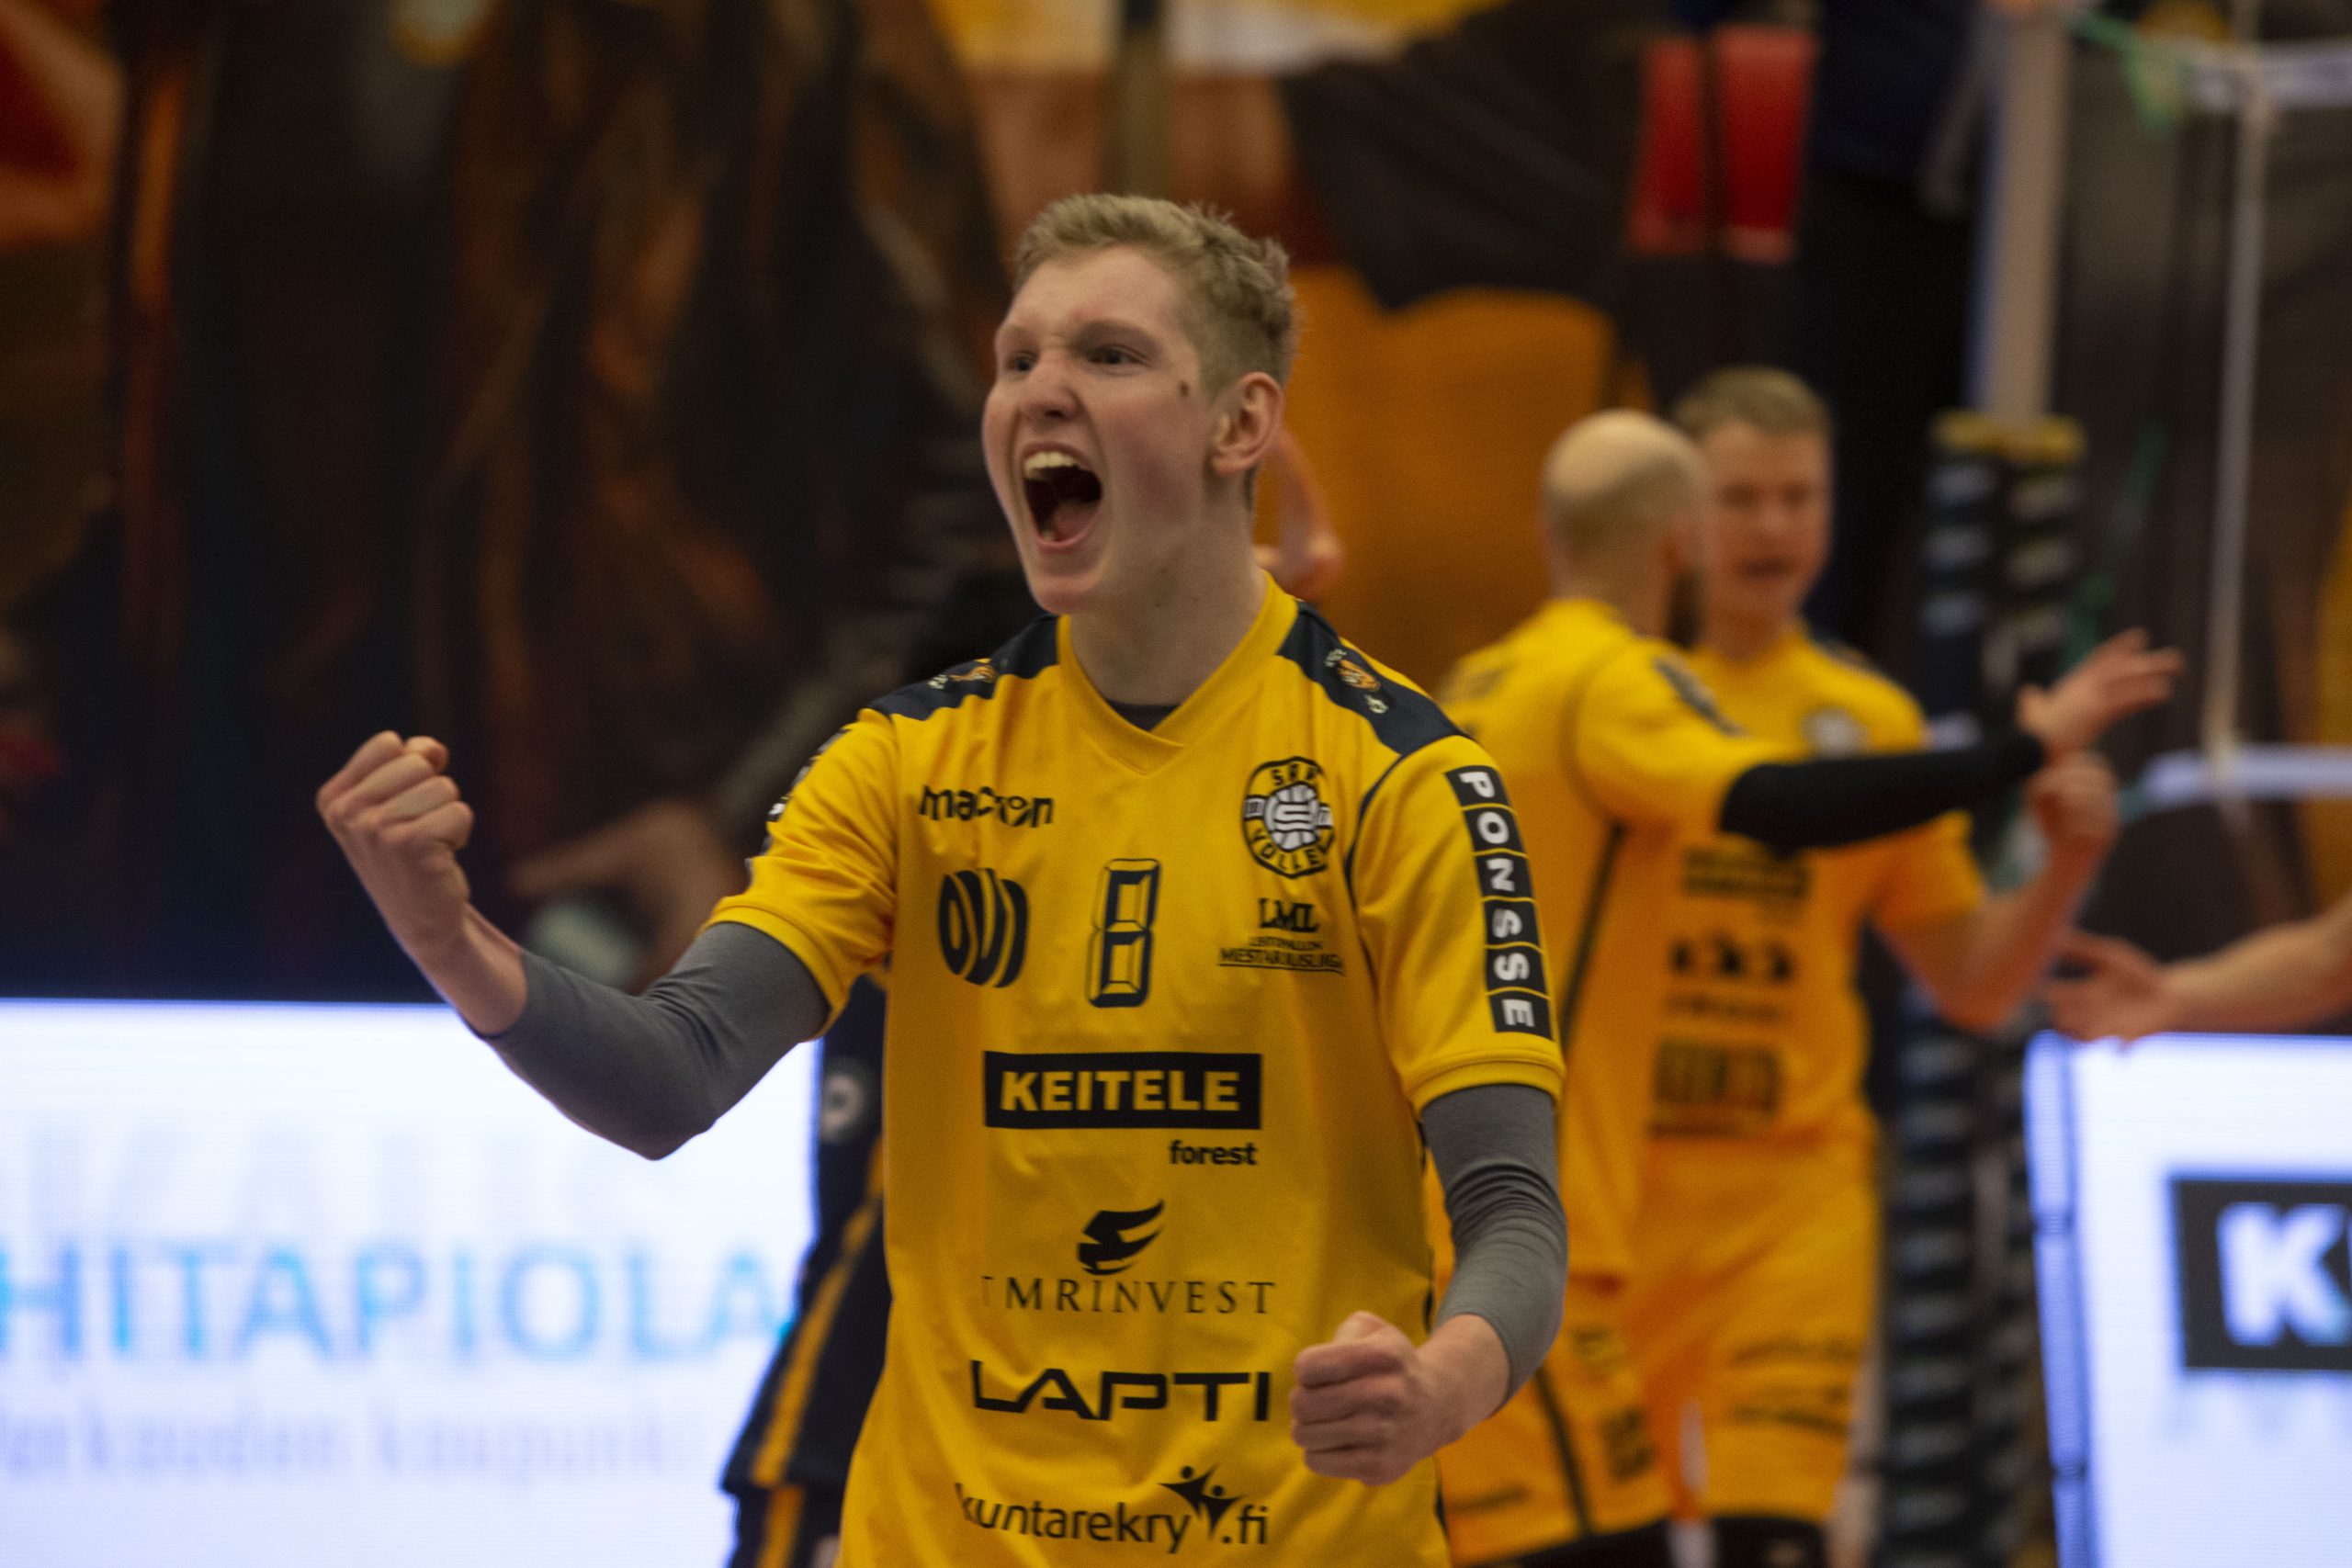 Savo Volleyn passari Fedor Ivanov palaa Suomen maajoukkueeseen ja jatkaa Savo Volleyssä.